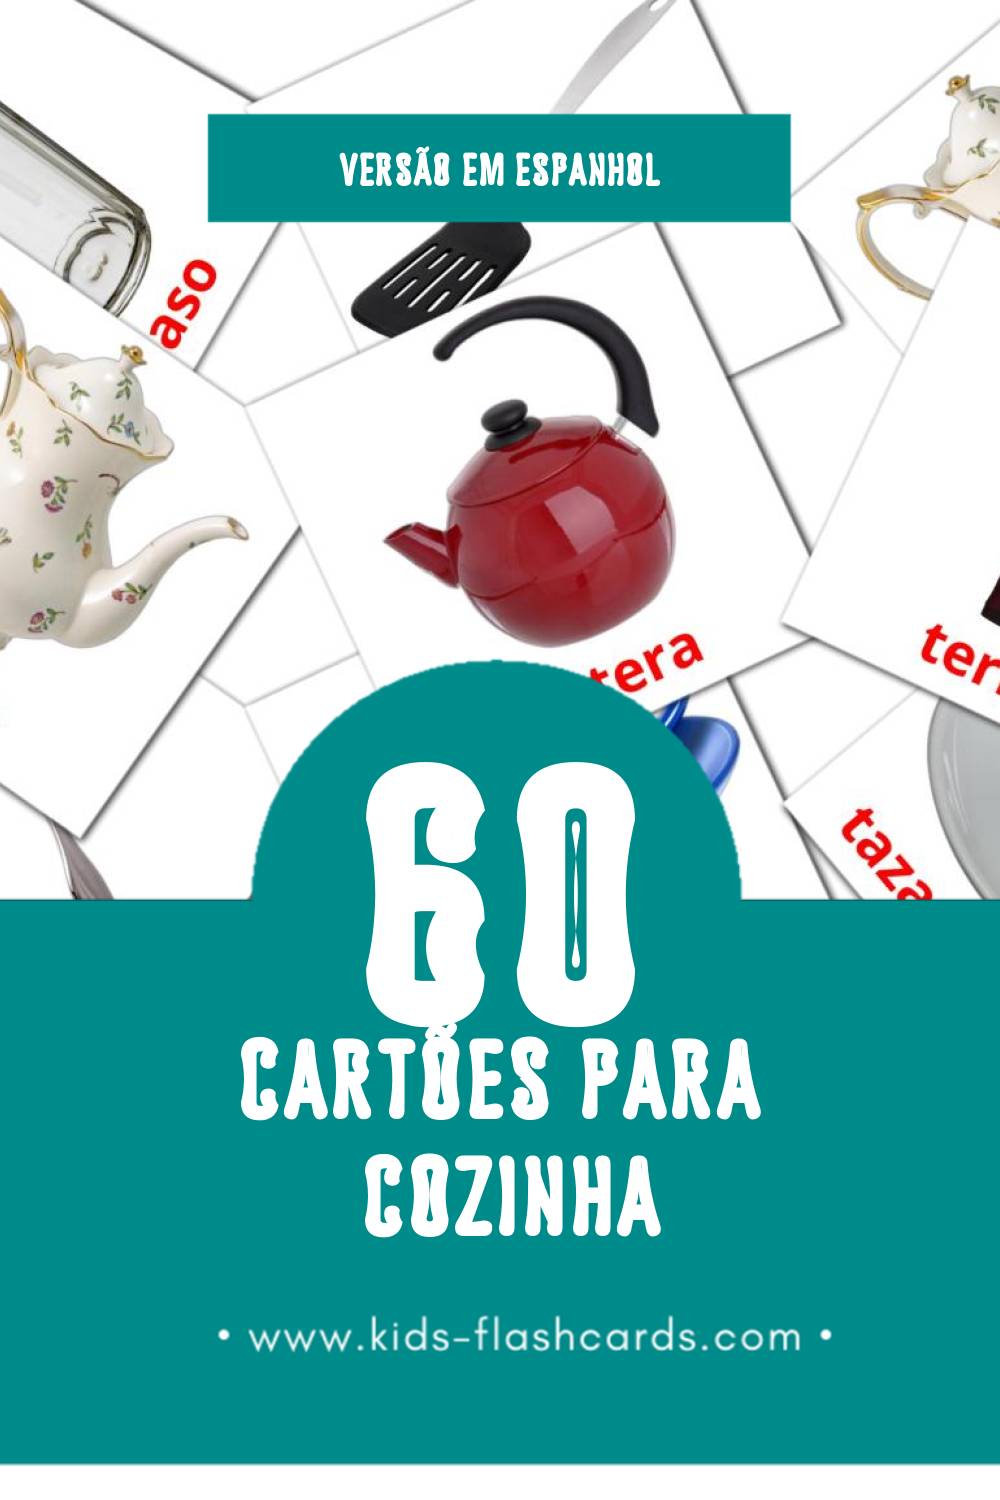 Flashcards de Cocina Visuais para Toddlers (64 cartões em Espanhol)